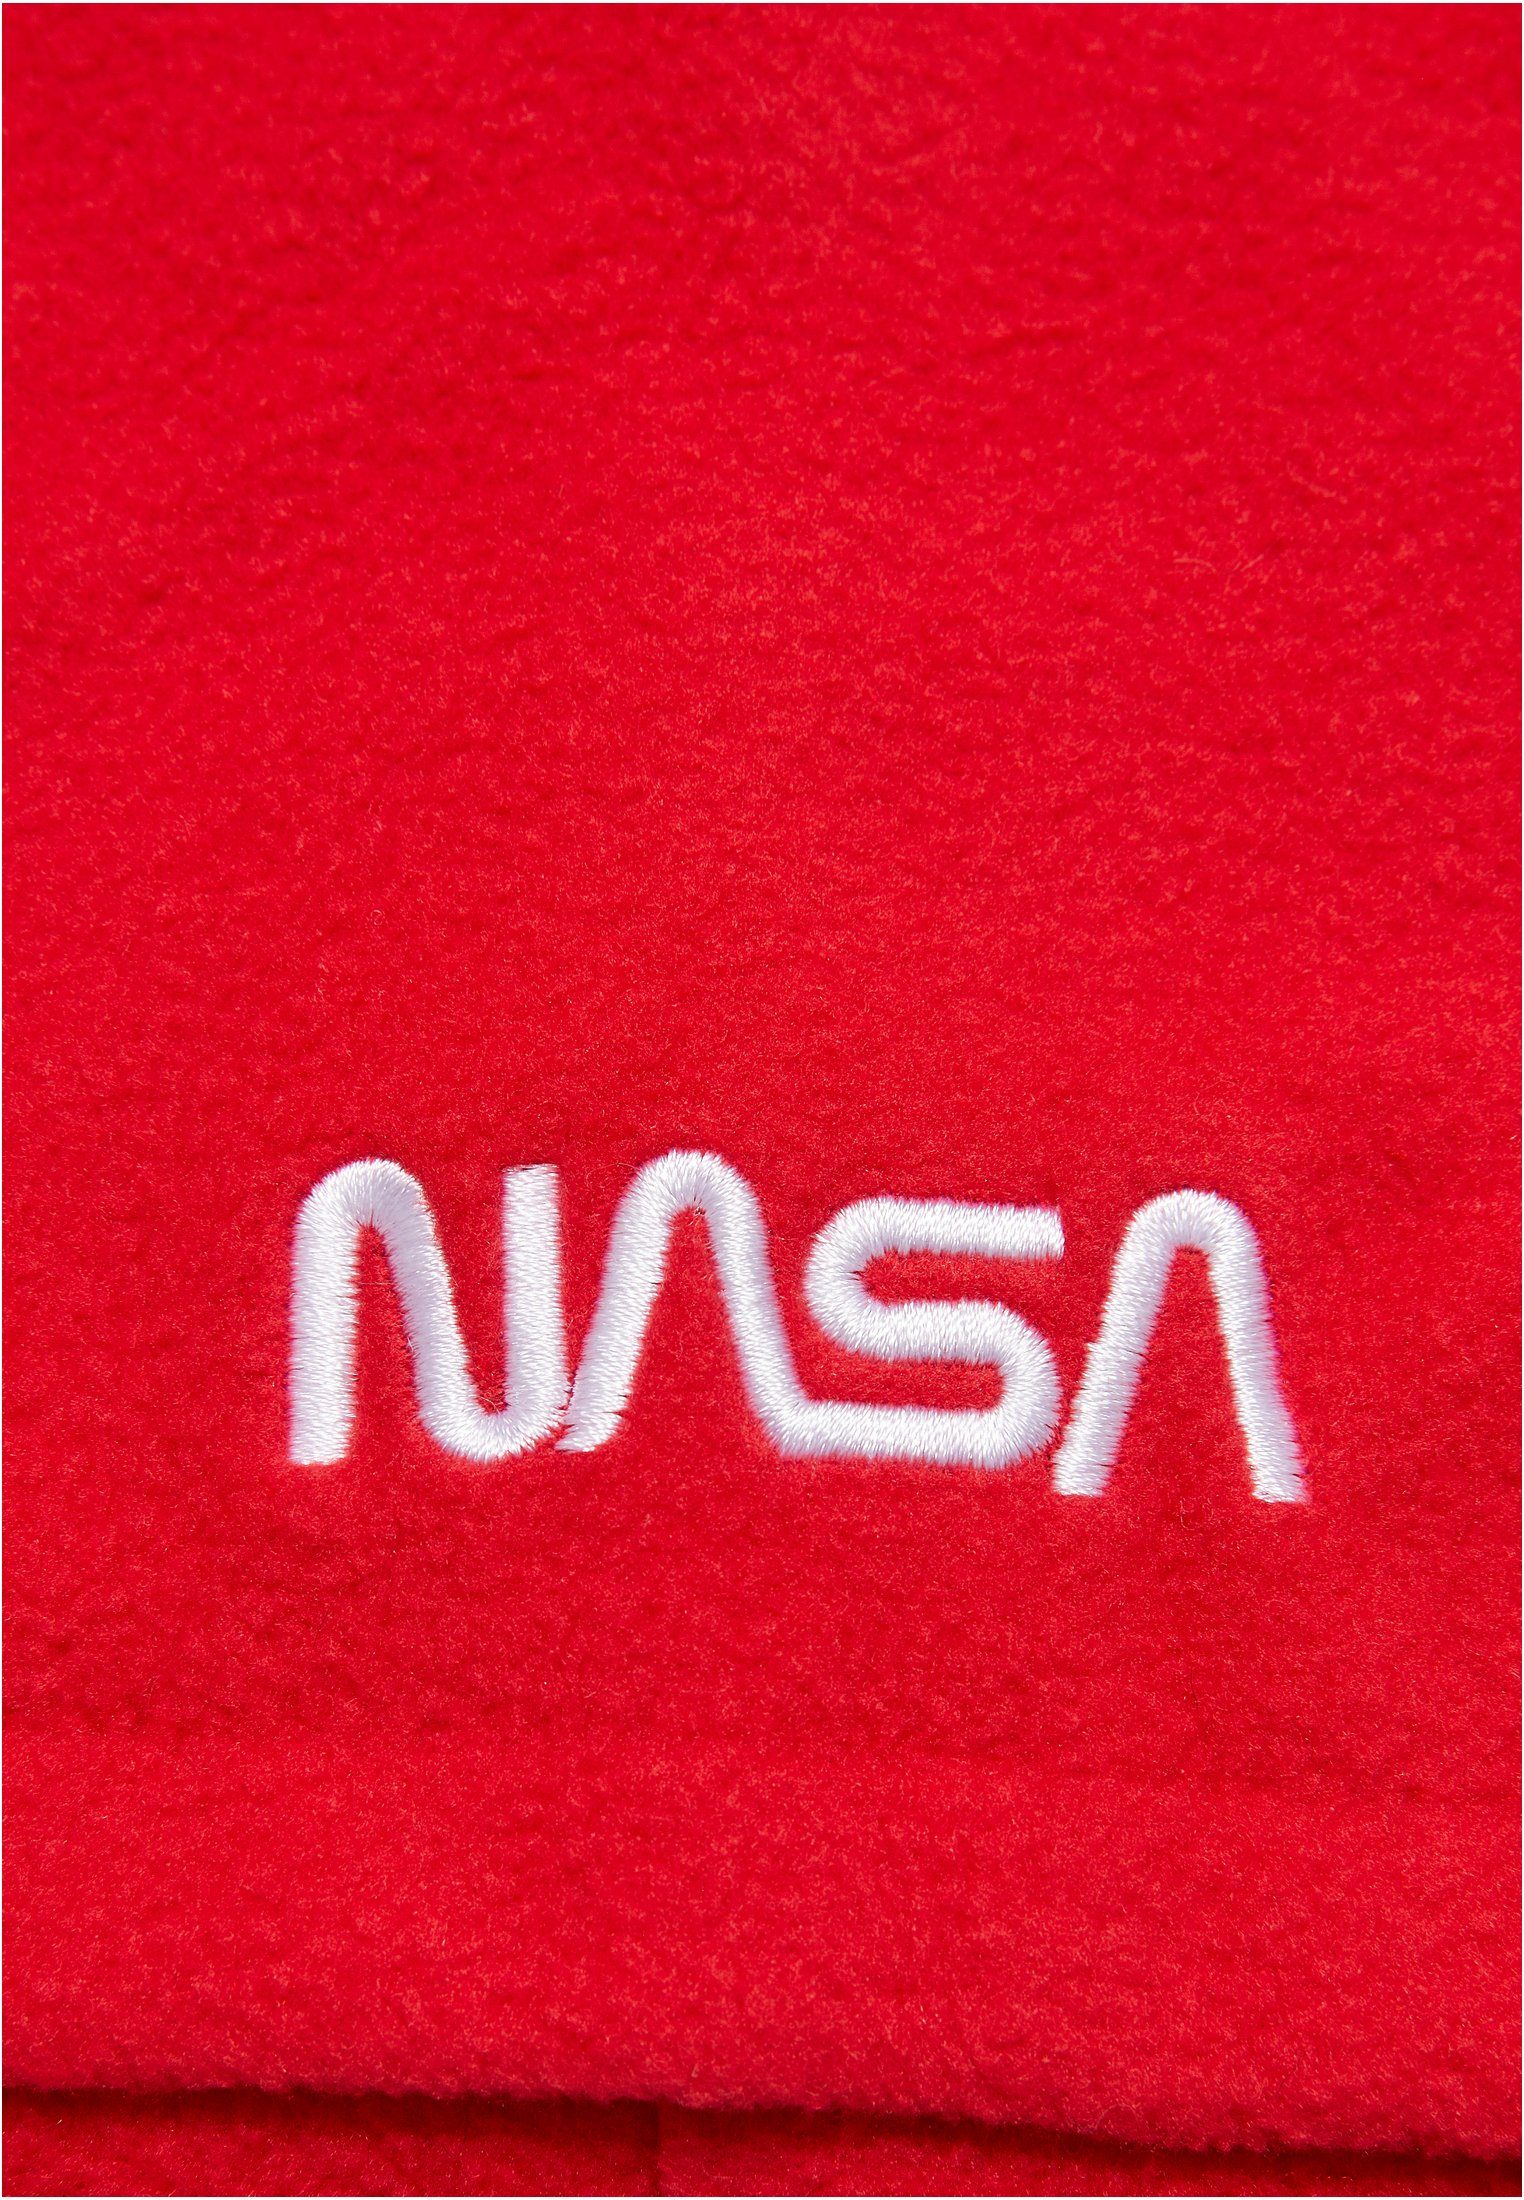 red NASA MisterTee Fleece Set Baumwollhandschuhe Accessoires